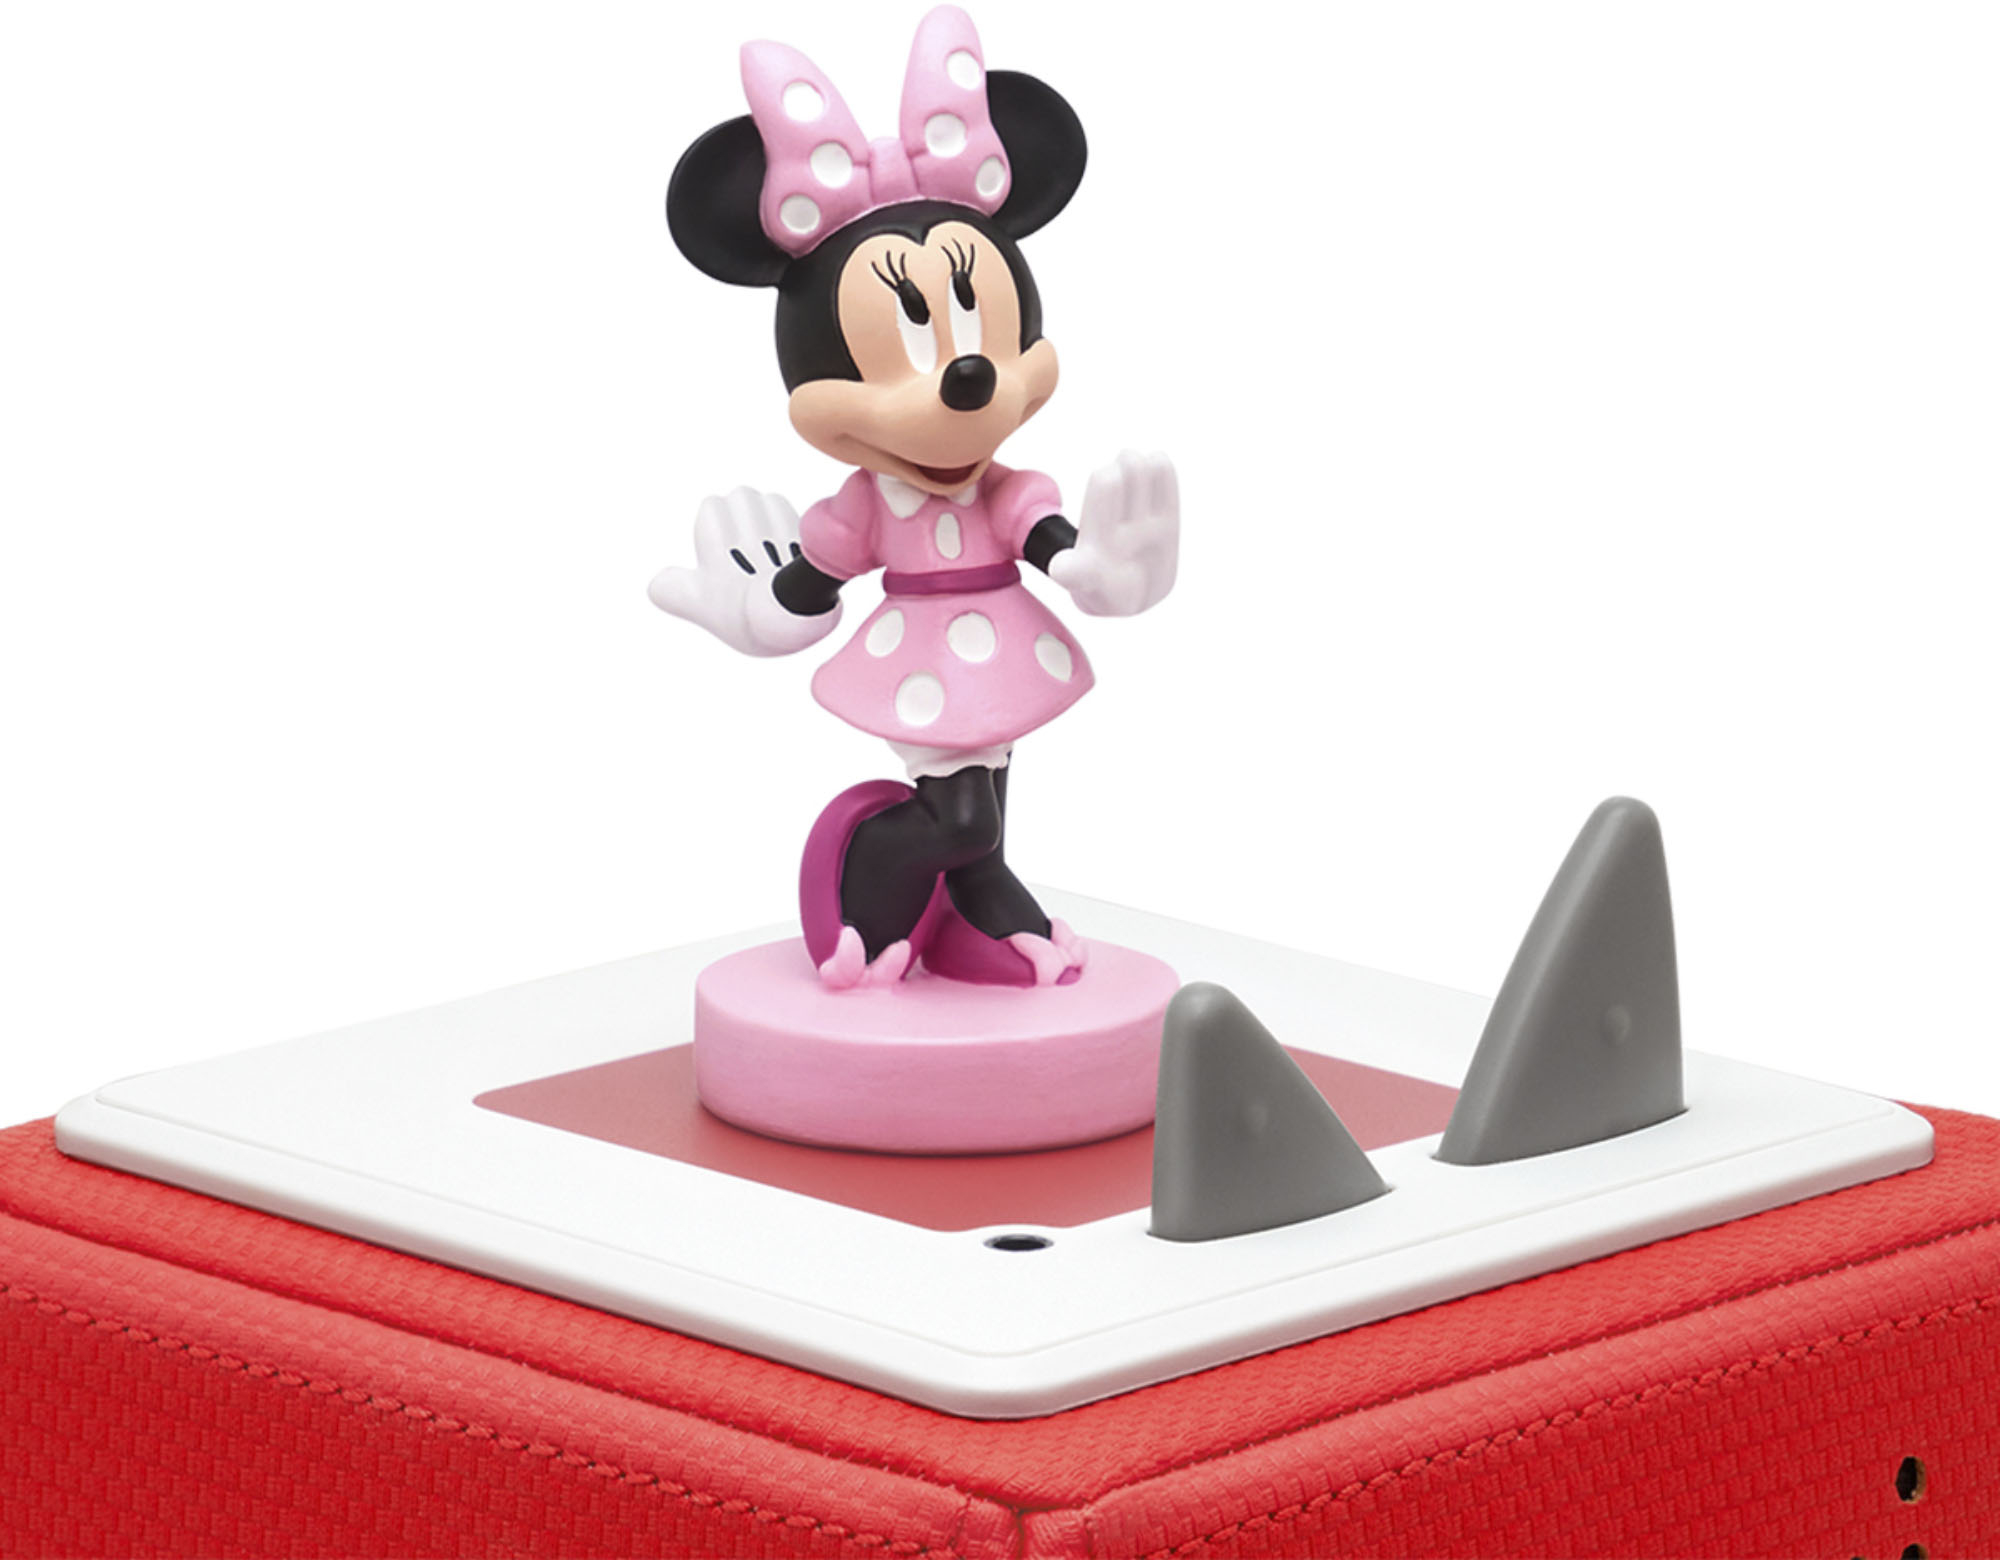 Nederigheid Umeki Integraal Tonies Disney Minnie Mouse Tonie Audio Play Figurine 10000655 - Best Buy